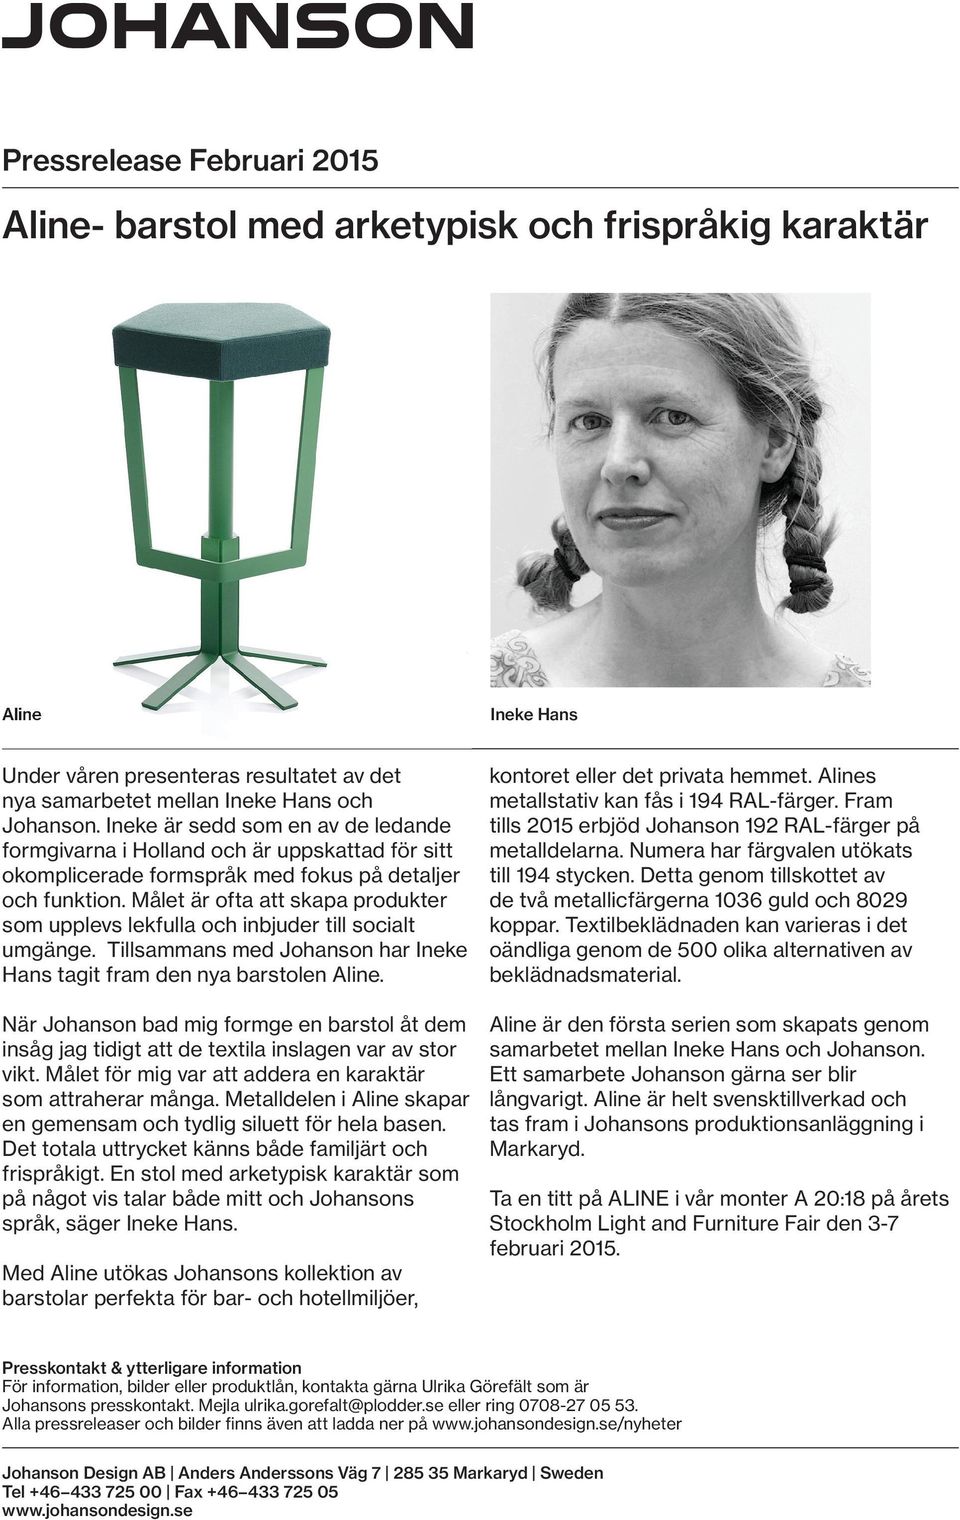 Målet är ofta att skapa produkter som upplevs lekfulla och inbjuder till socialt umgänge. Tillsammans med Johanson har Ineke Hans tagit fram den nya barstolen Aline.